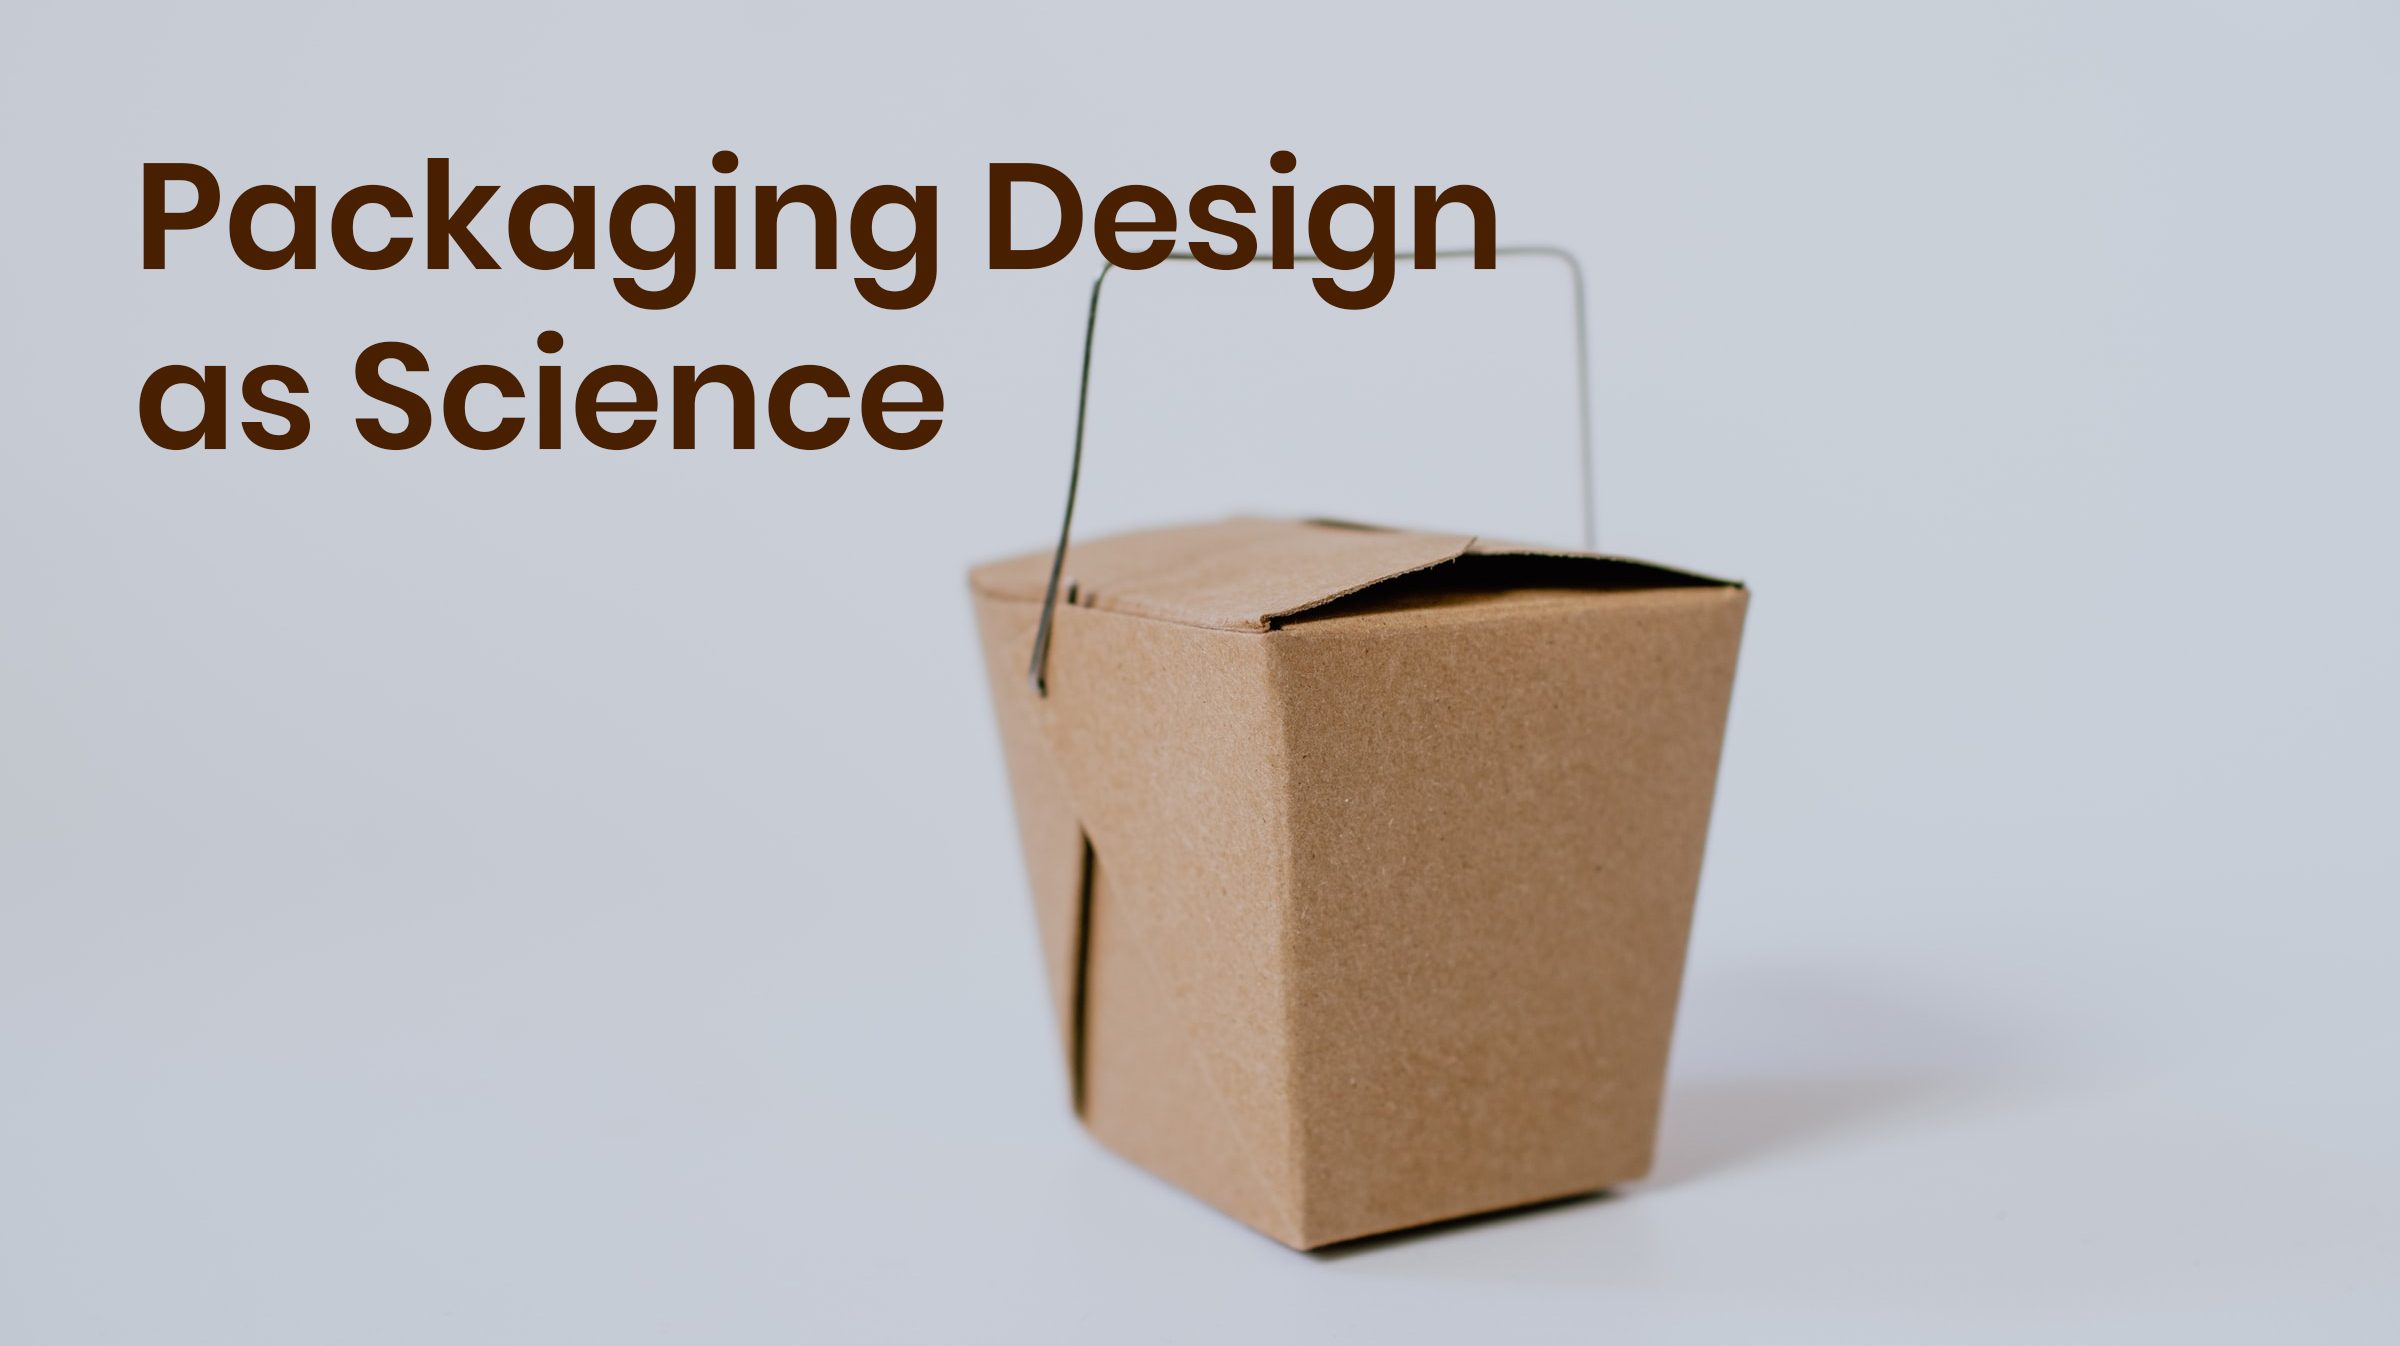 Packaging design as science